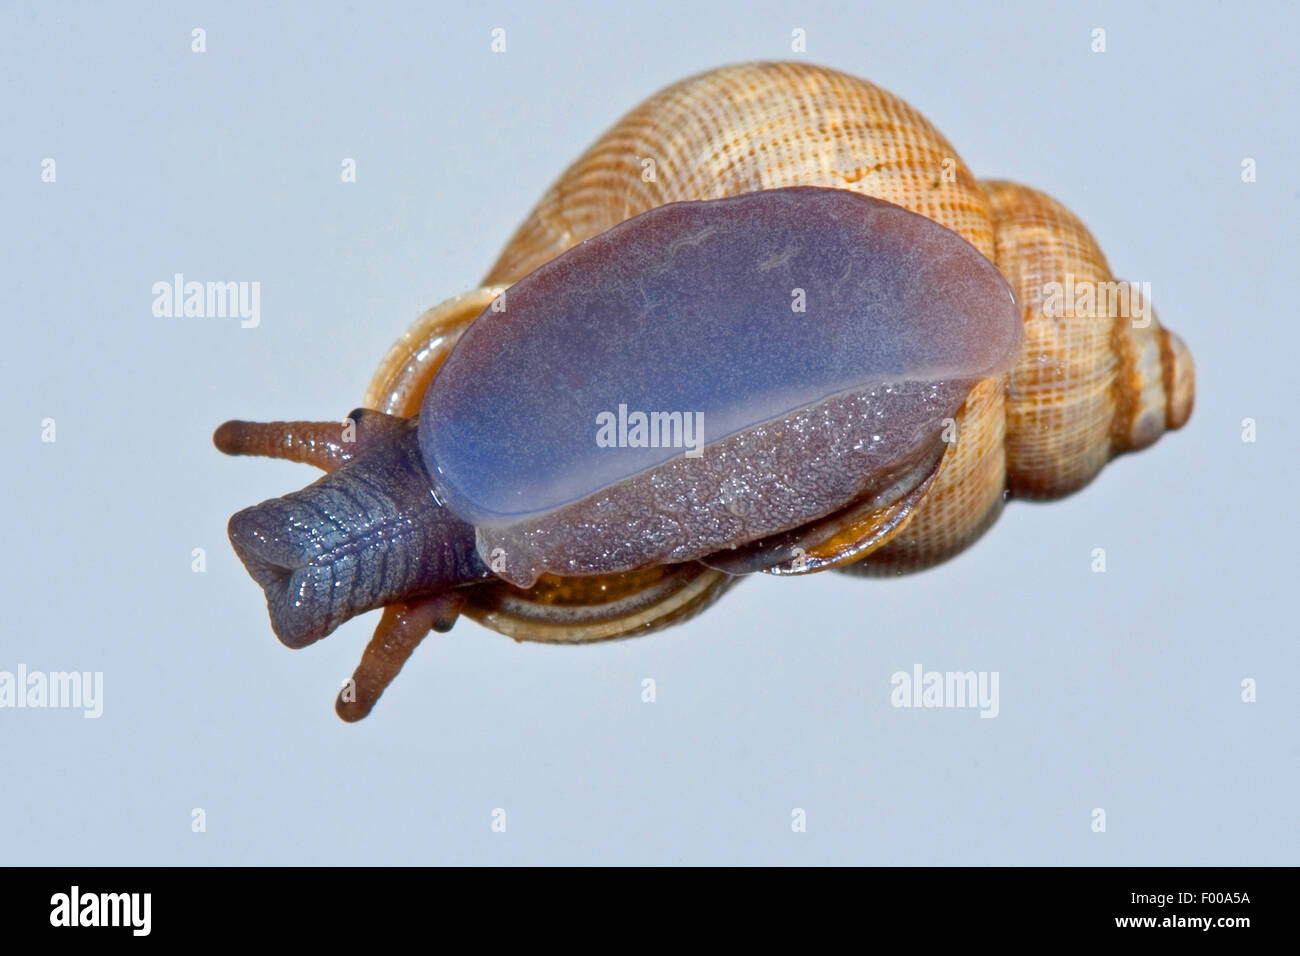 Nez rouge, nez rond escargot snail (Pomatias elegans), sur un panneau de verre, Allemagne Banque D'Images